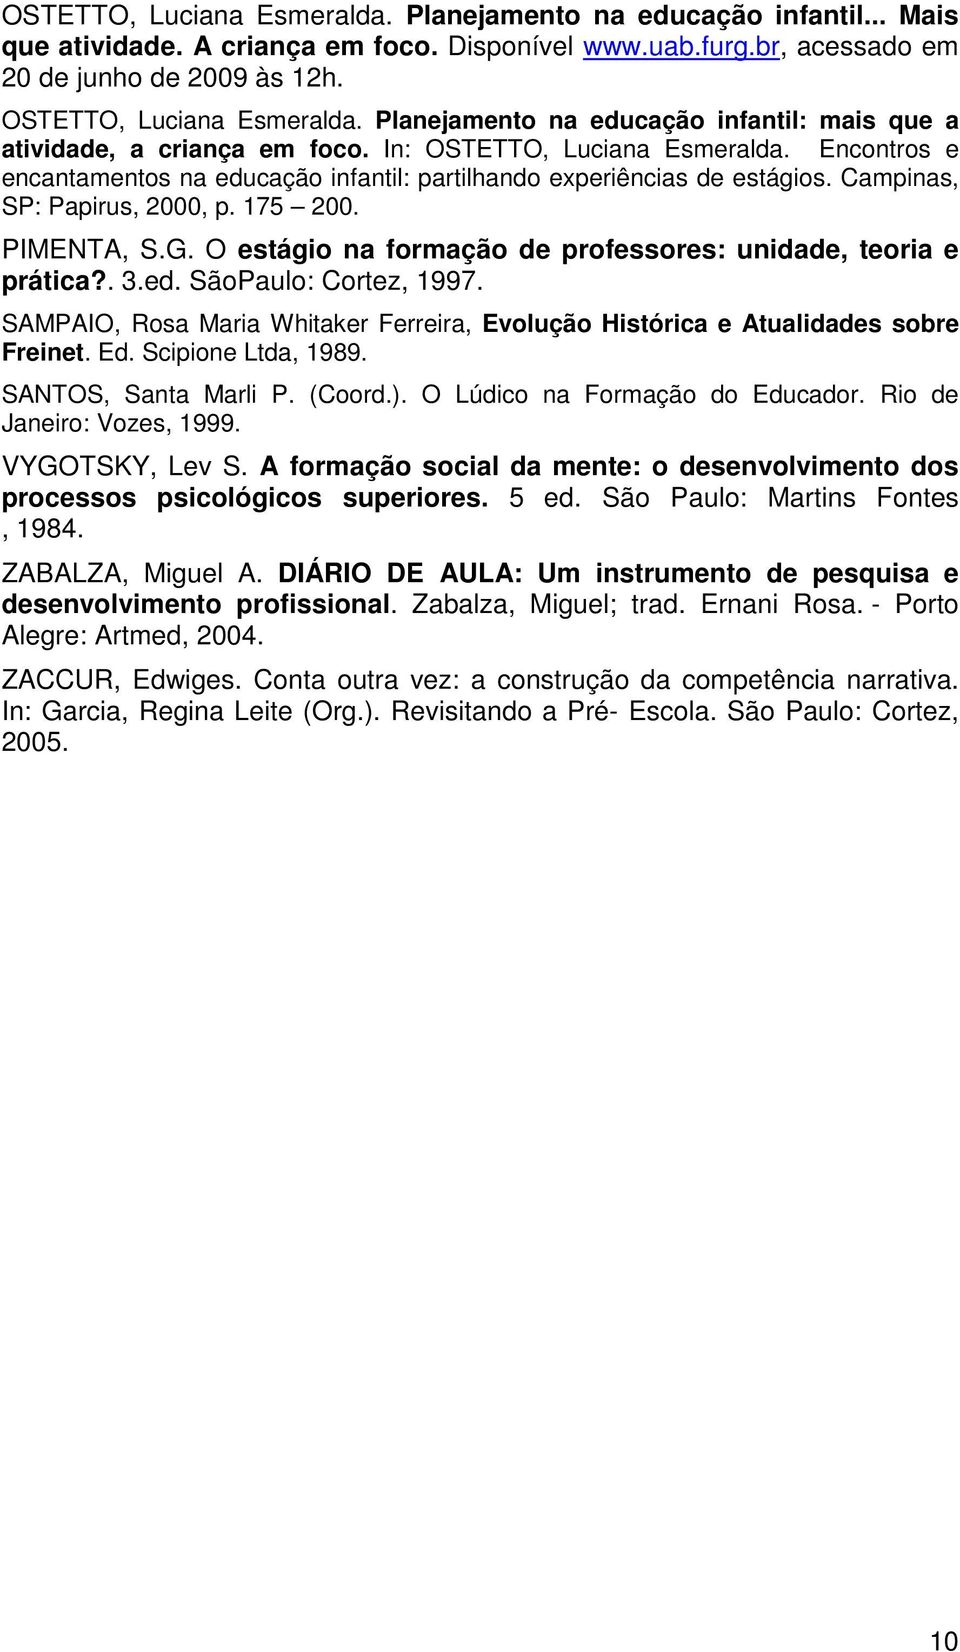 Campinas, SP: Papirus, 2000, p. 175 200. PIMENTA, S.G. O estágio na formação de professores: unidade, teoria e prática?. 3.ed. SãoPaulo: Cortez, 1997.